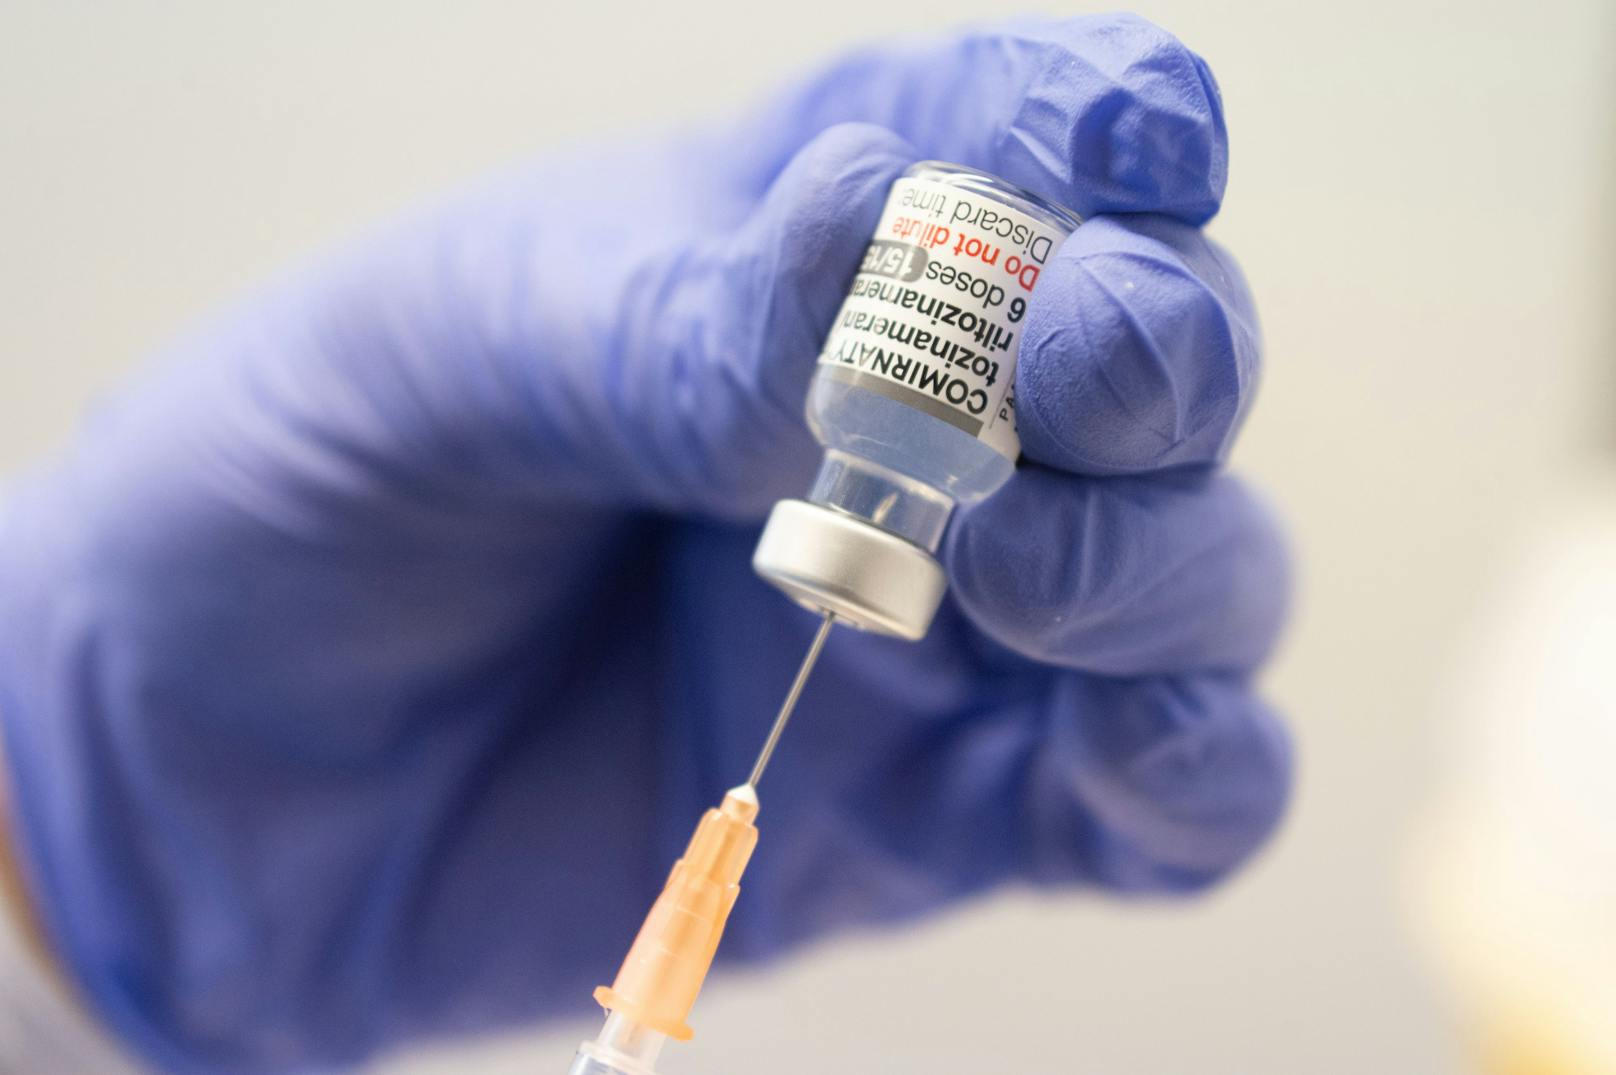 Neue Corona-Variante nimmt zu – so wirken Impfstoffe